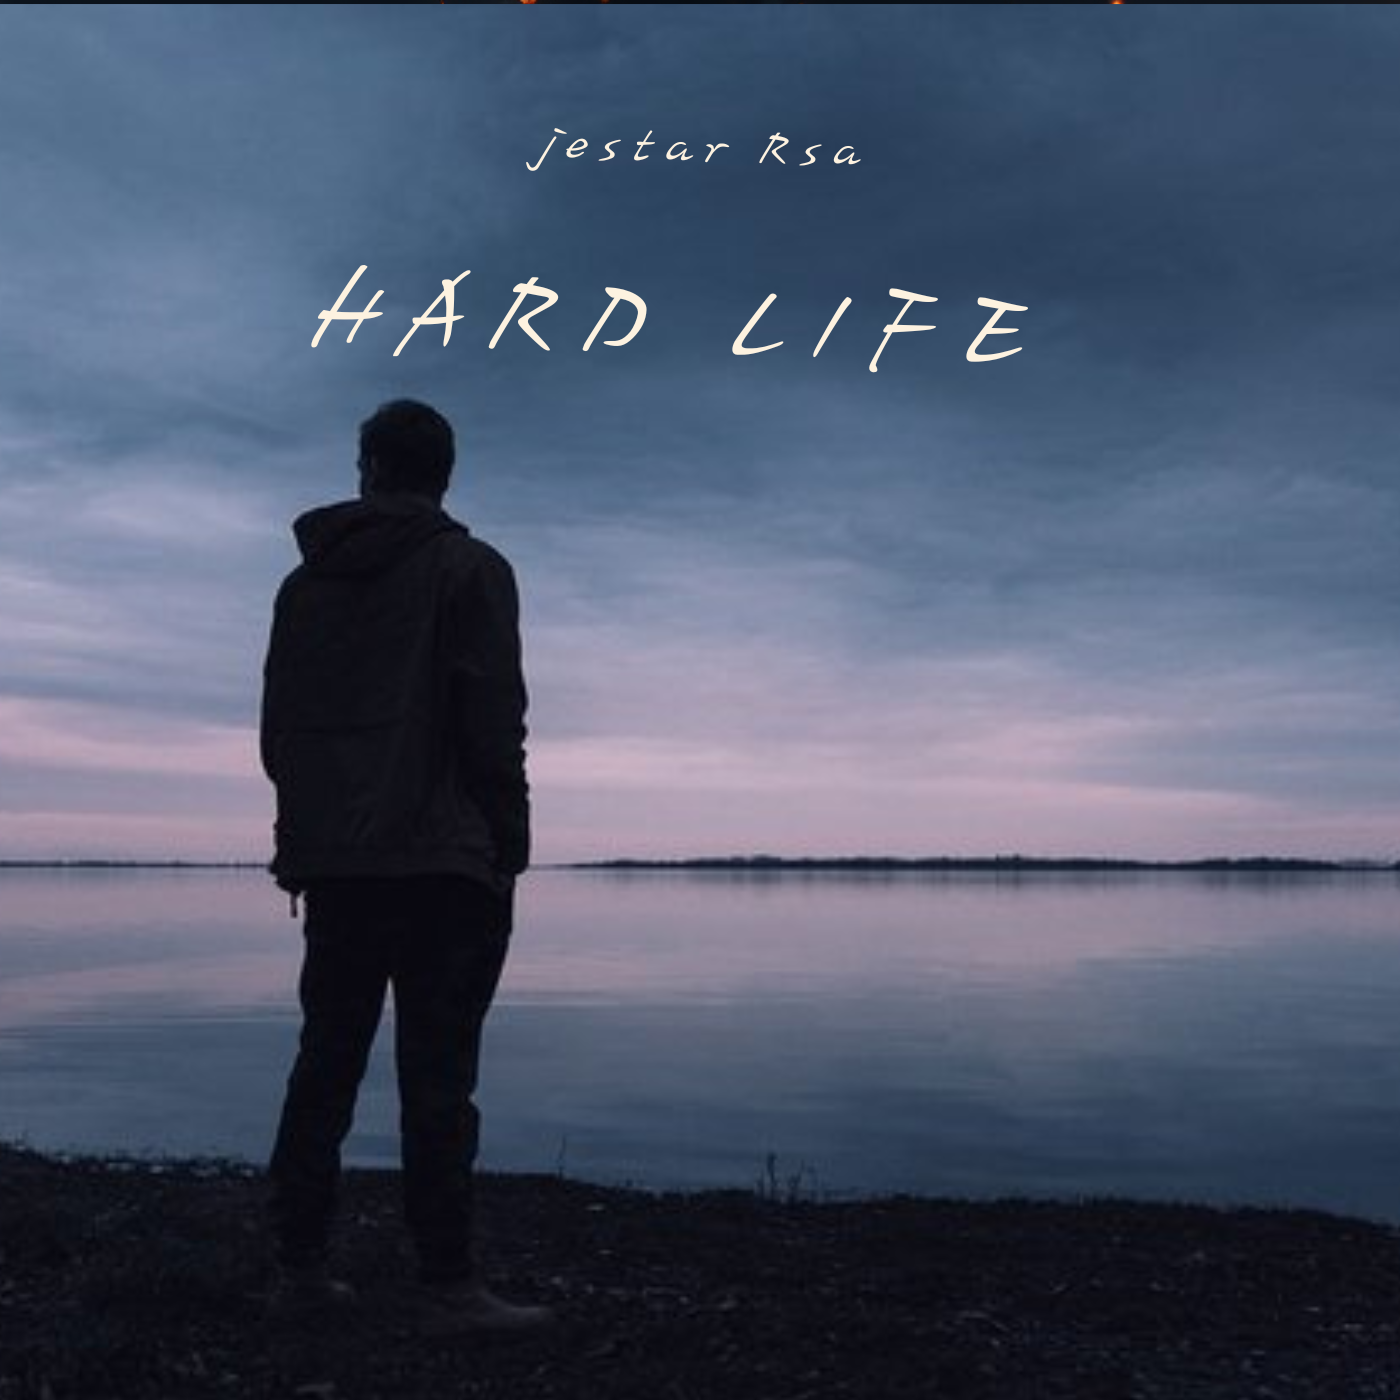 Hard life - Jestar rsa